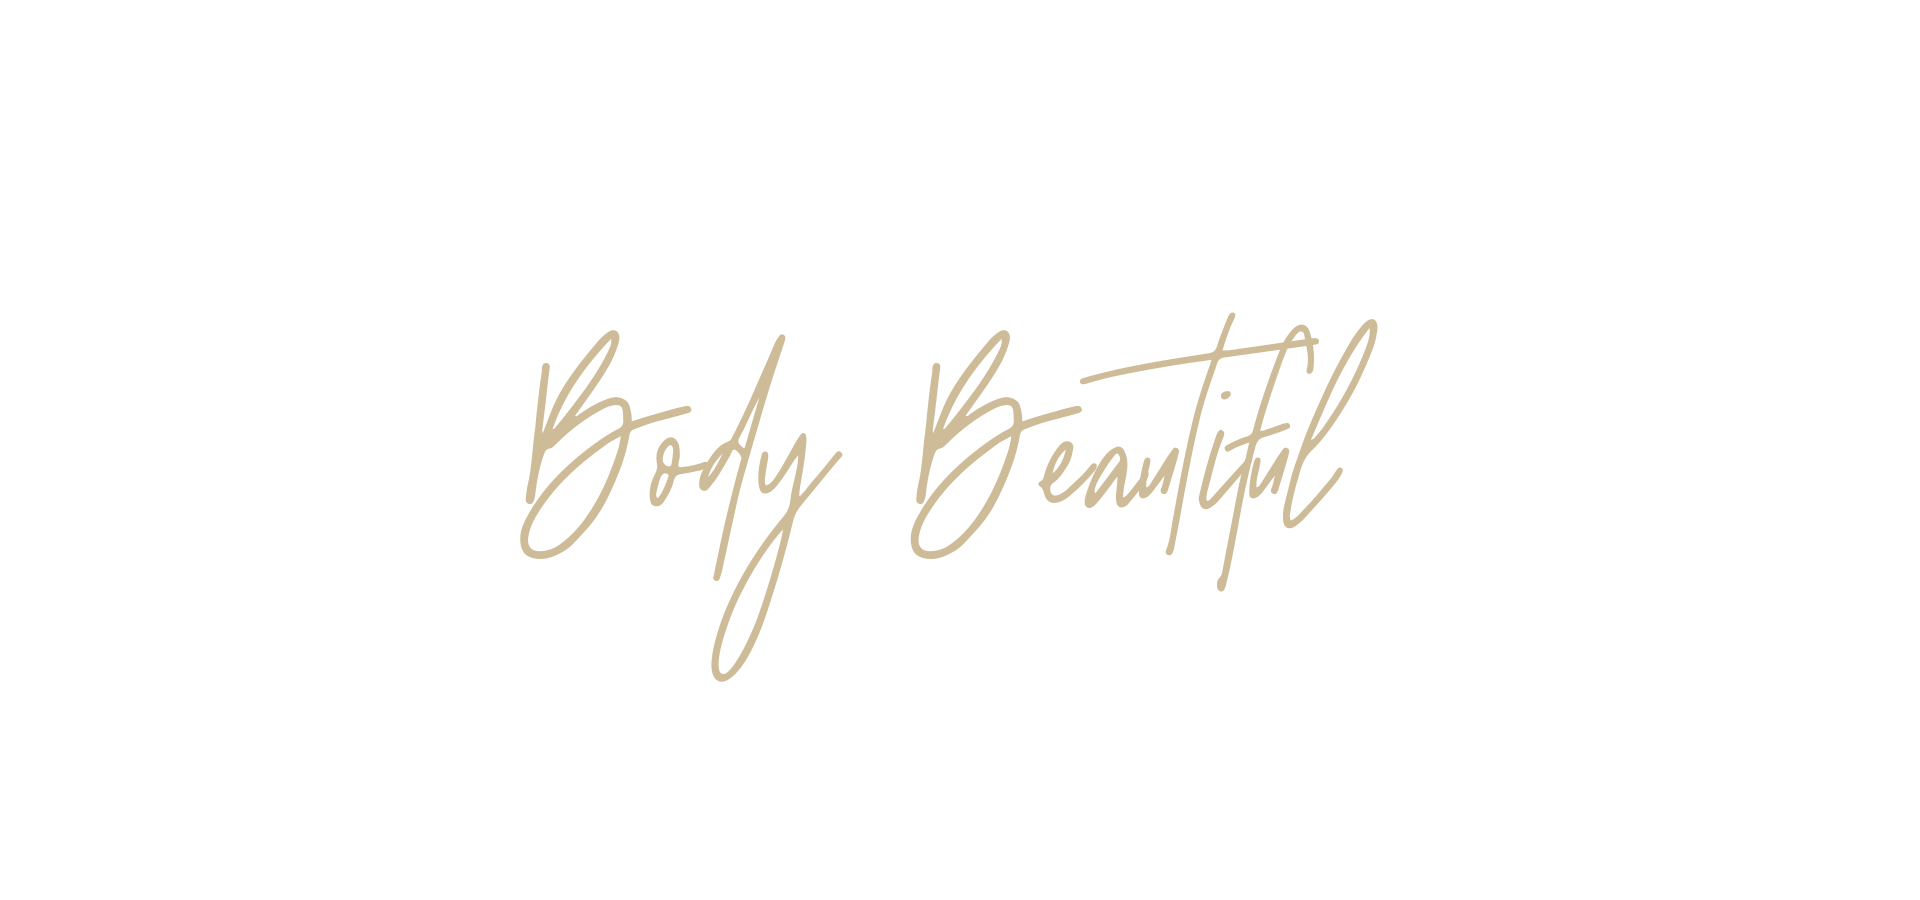 Body Beautiful — World of wonderful | London Business and Life Coach